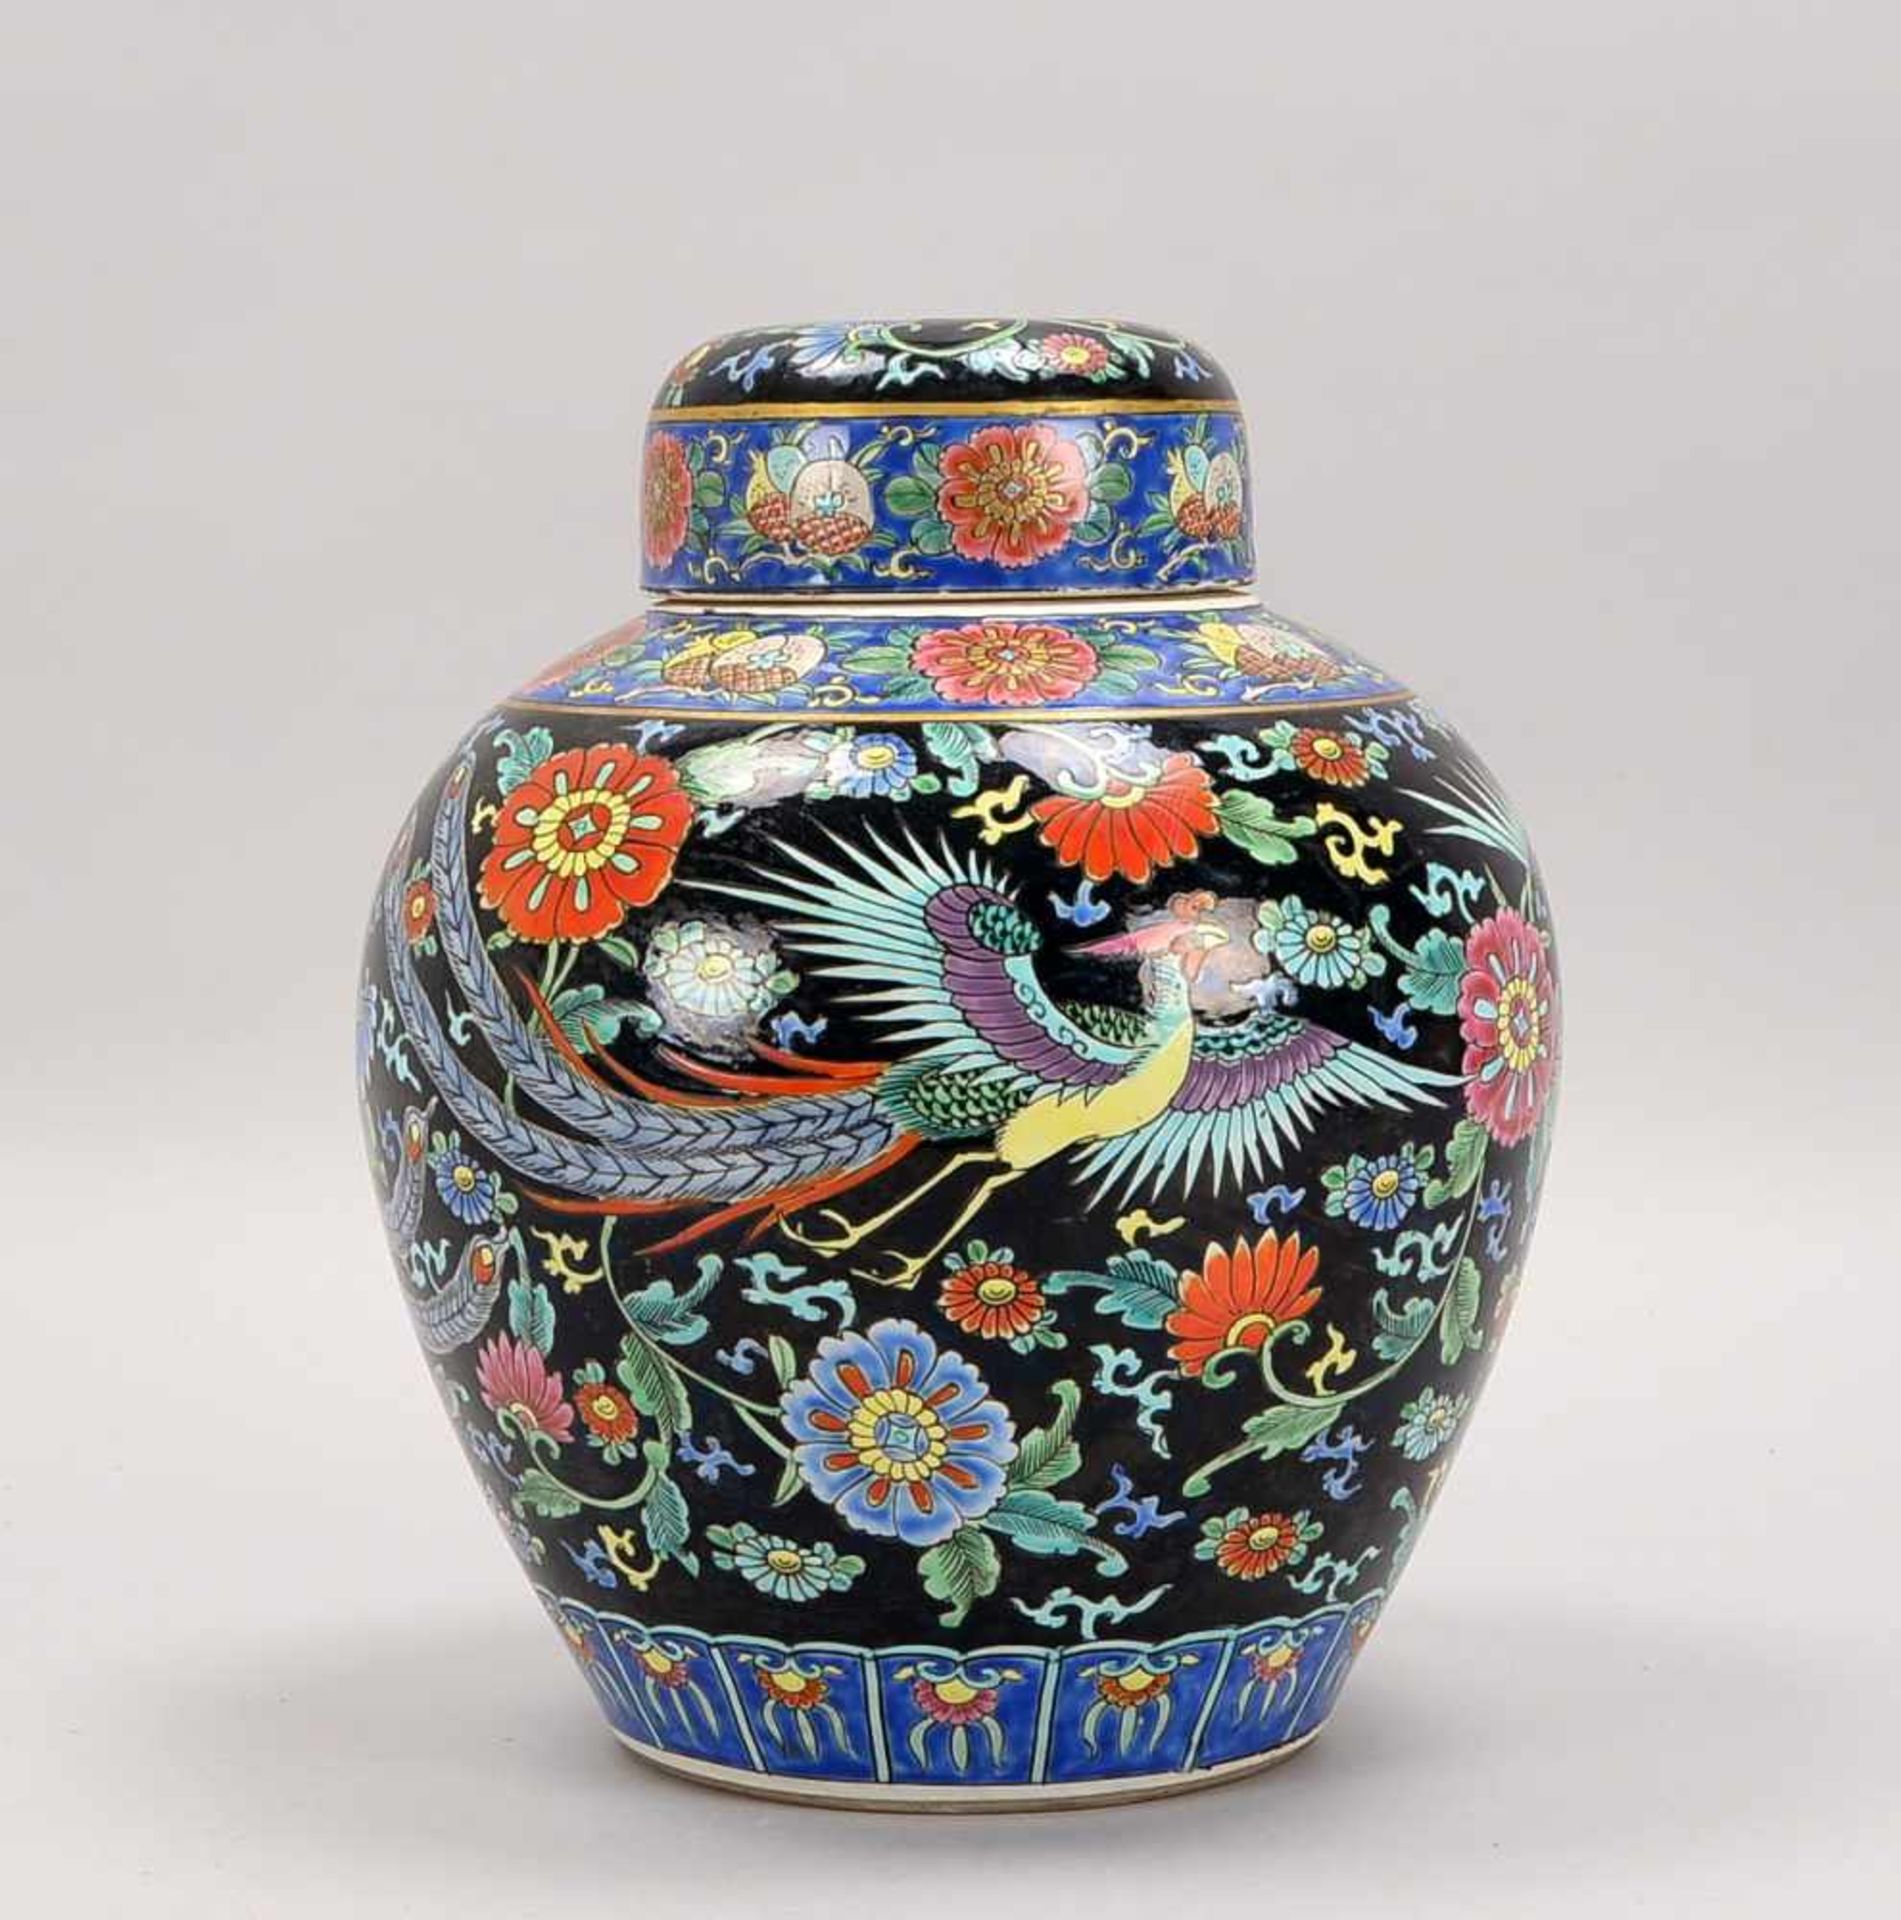 Deckelvase, China/19. Jahrhundert (späte Qing-Dynastie), Porzellan, im Famille Noir-Stil, mit